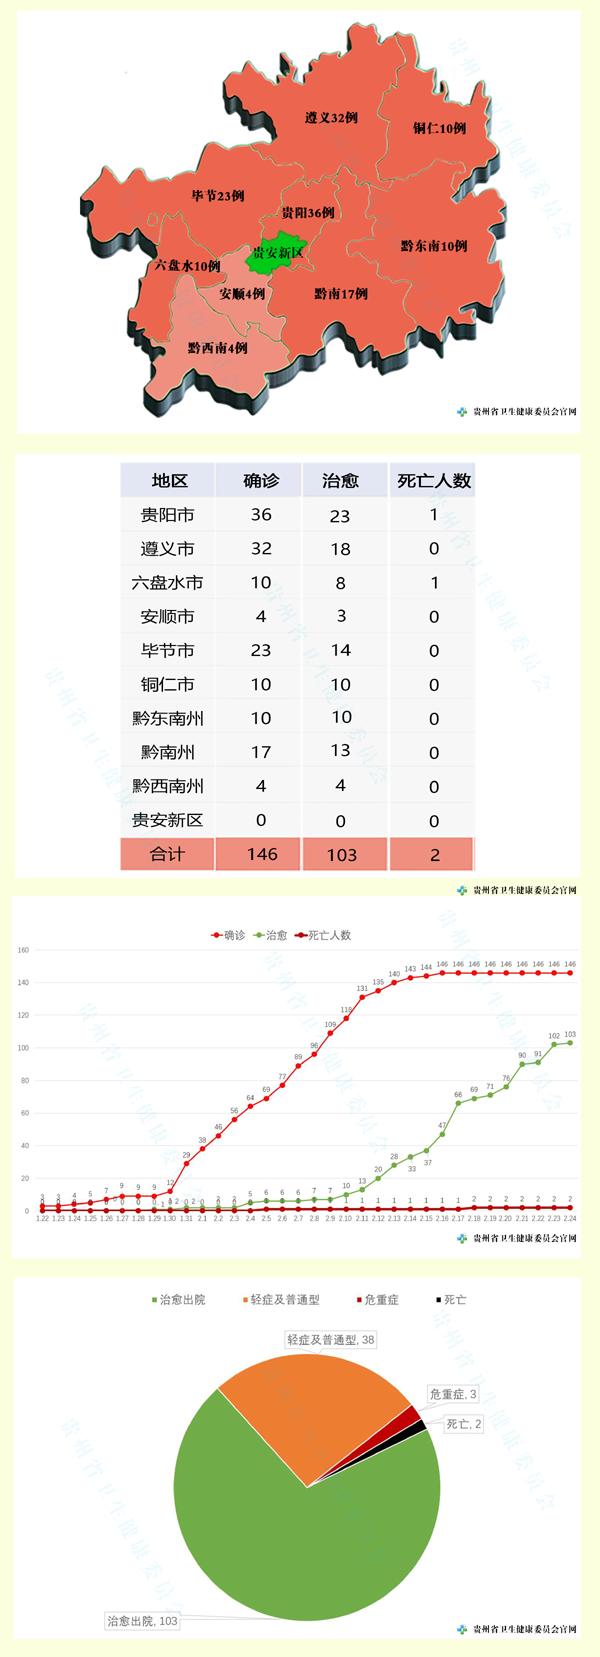 2月24日贵州无新增确诊病例 已连续8日新增为零